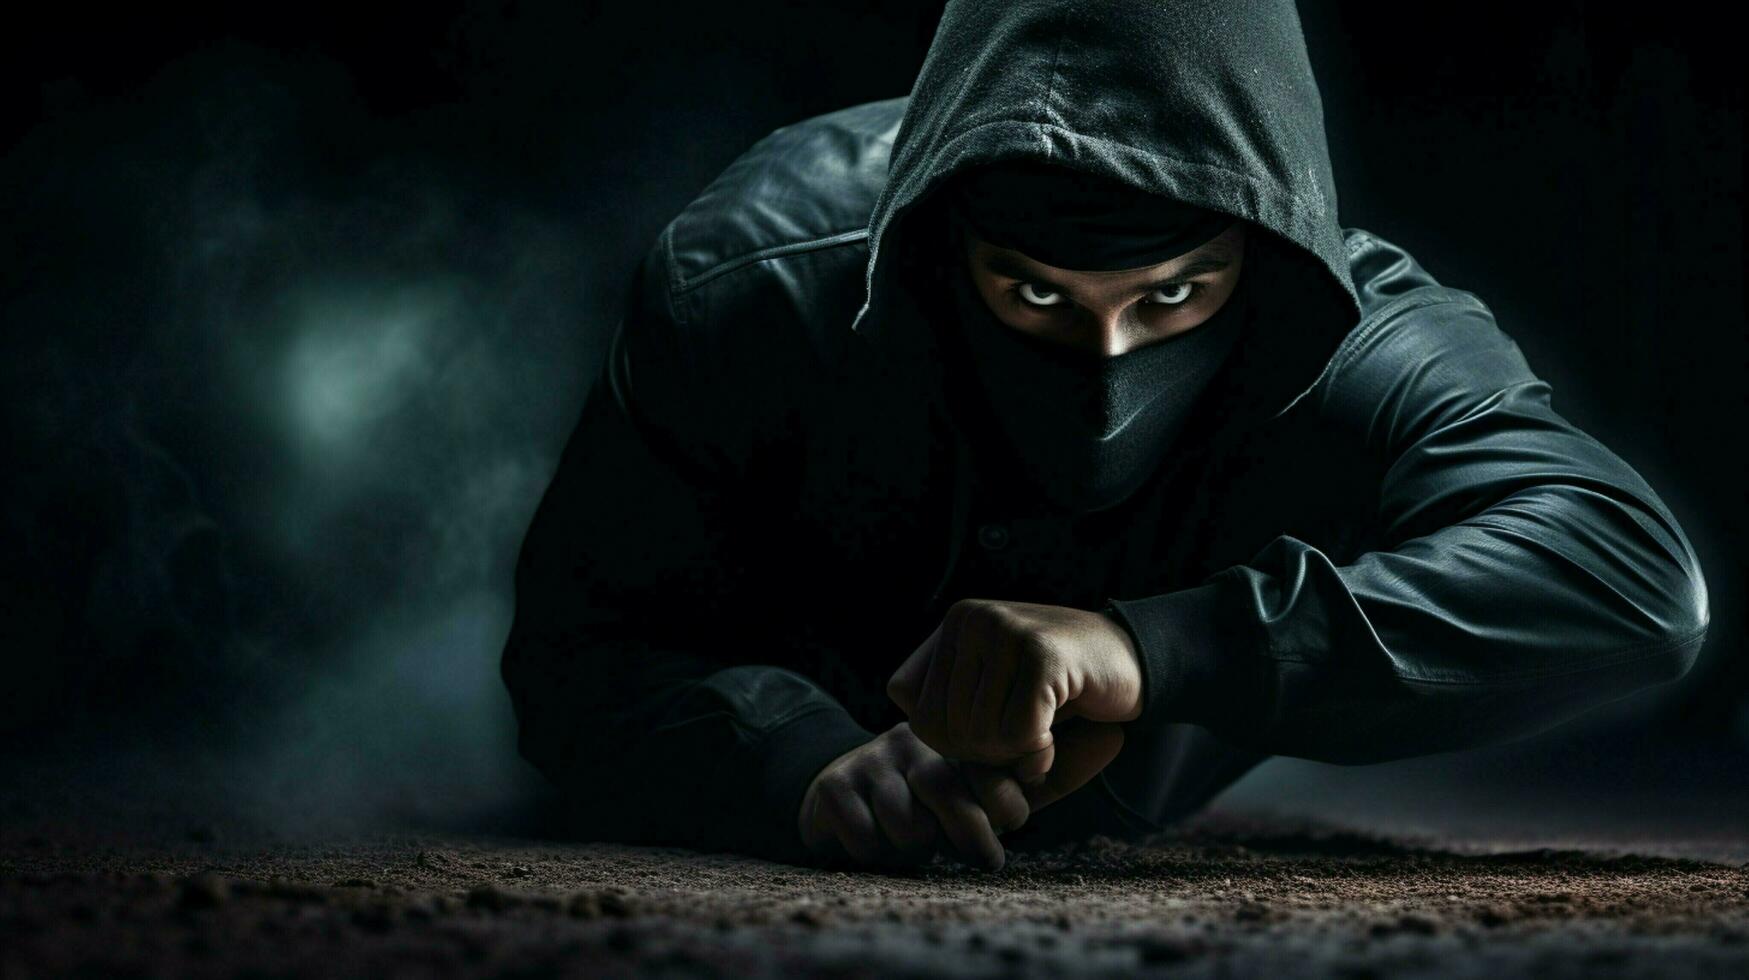 hooded burglar exercising danger in black solitude photo